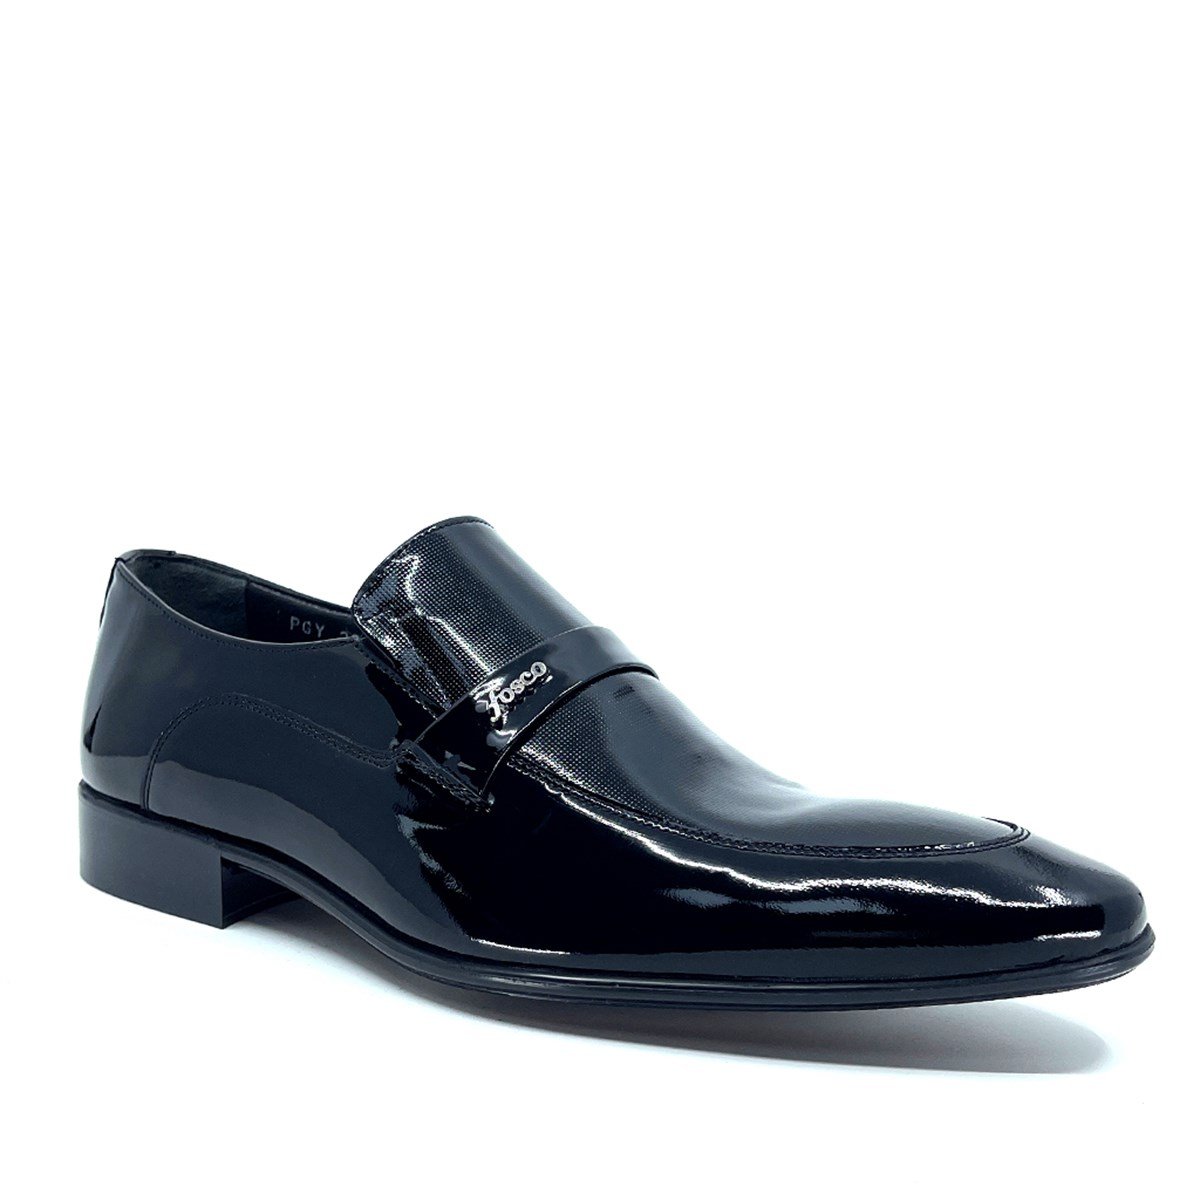 Bağcıksız Siyah Rugan Erkek Klasik Ayakkabı 2280-3 430 843 - Fosco